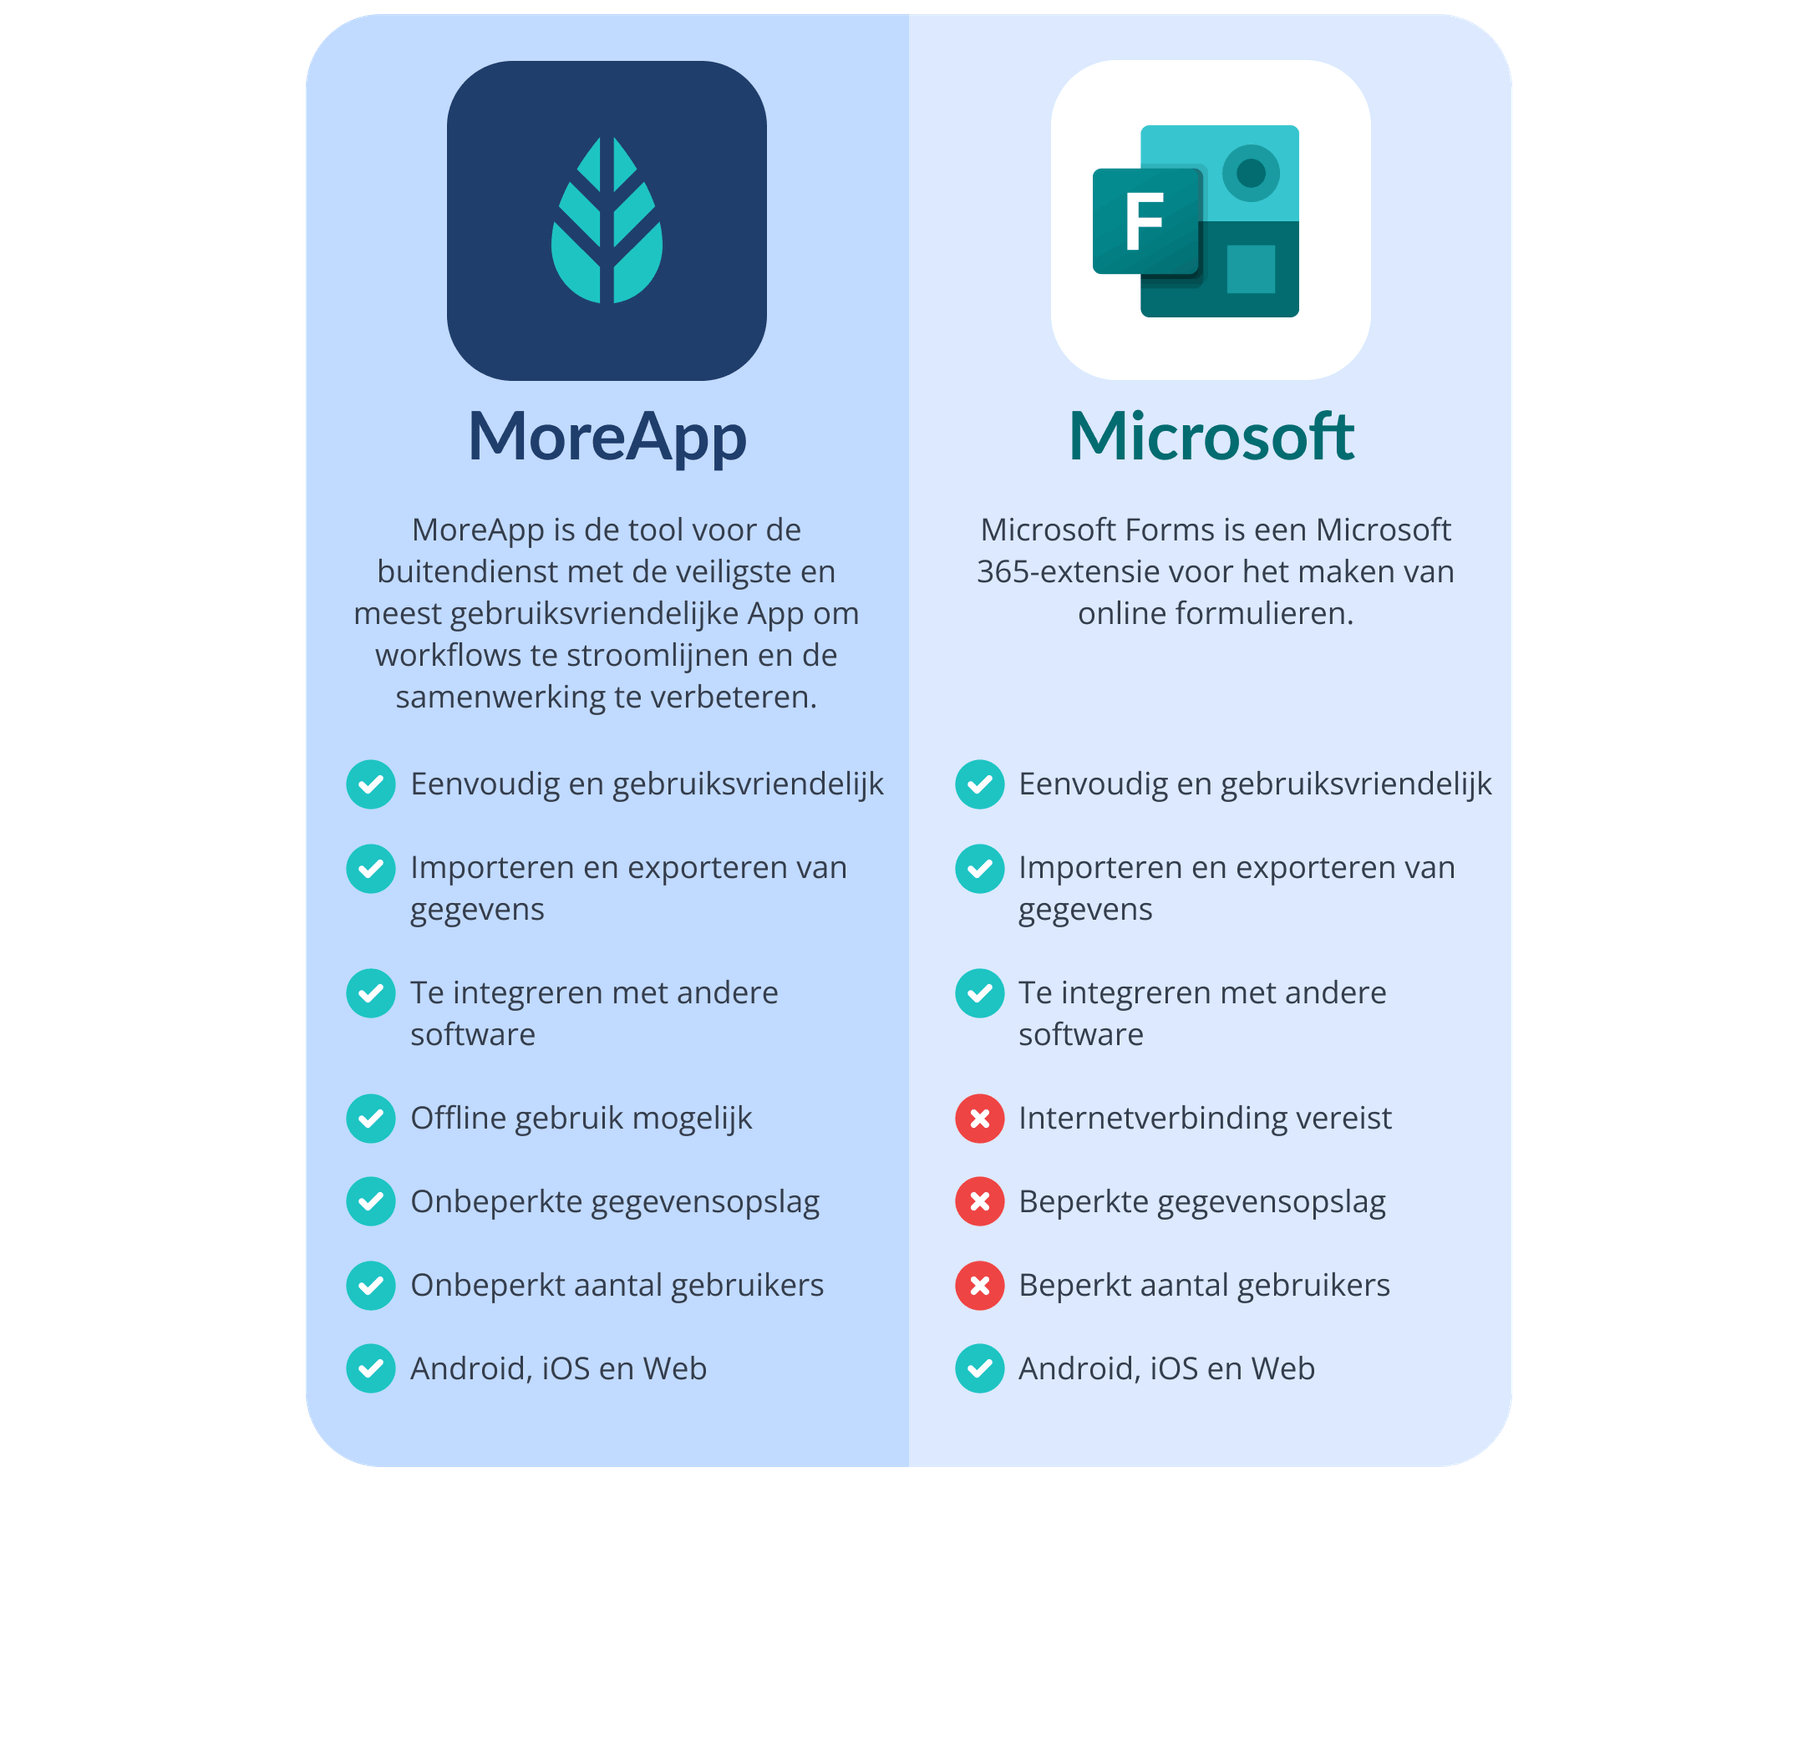 MoreApp Formulieren versus Microsoft Formulieren